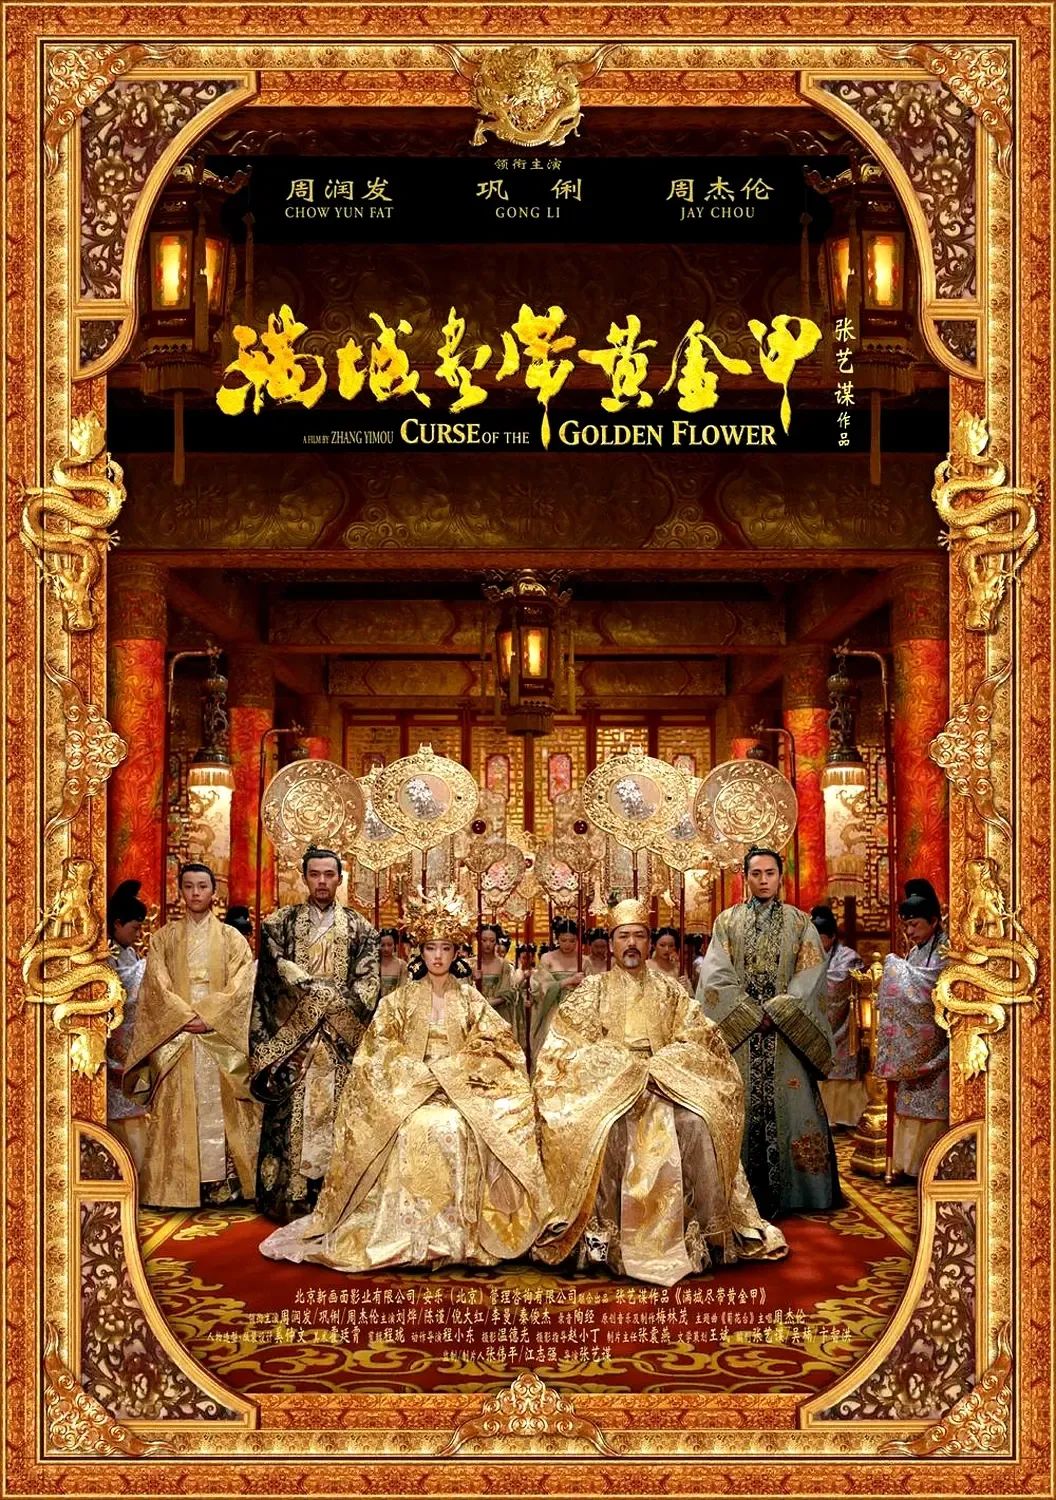 电影评介·专题 | 试论中国电影对中国古典诗词艺术的传承——以帝王题材电影和豪放派诗词为例